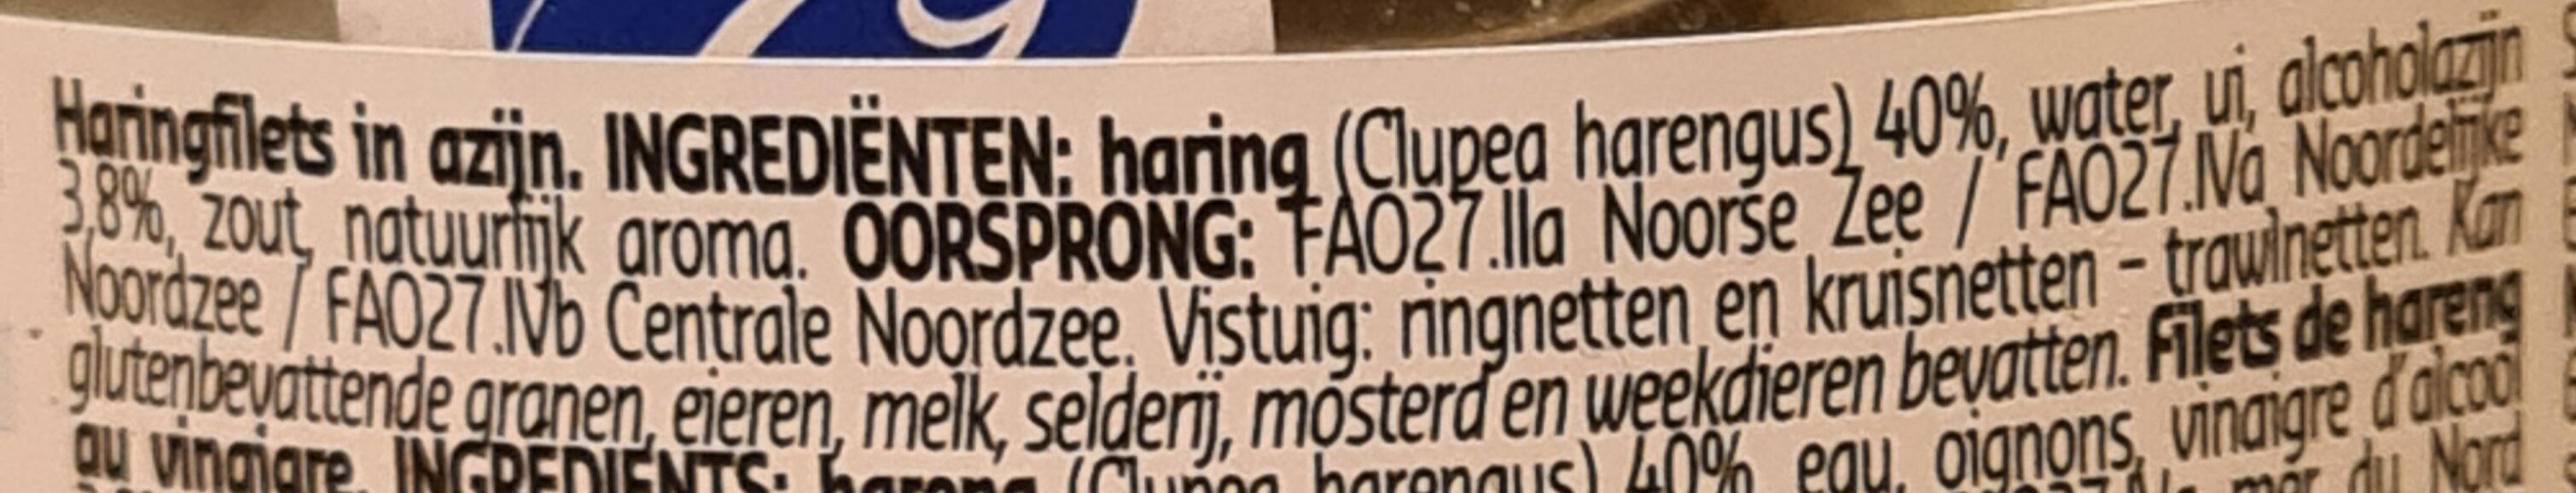 Haringfiets - Ingrediënten